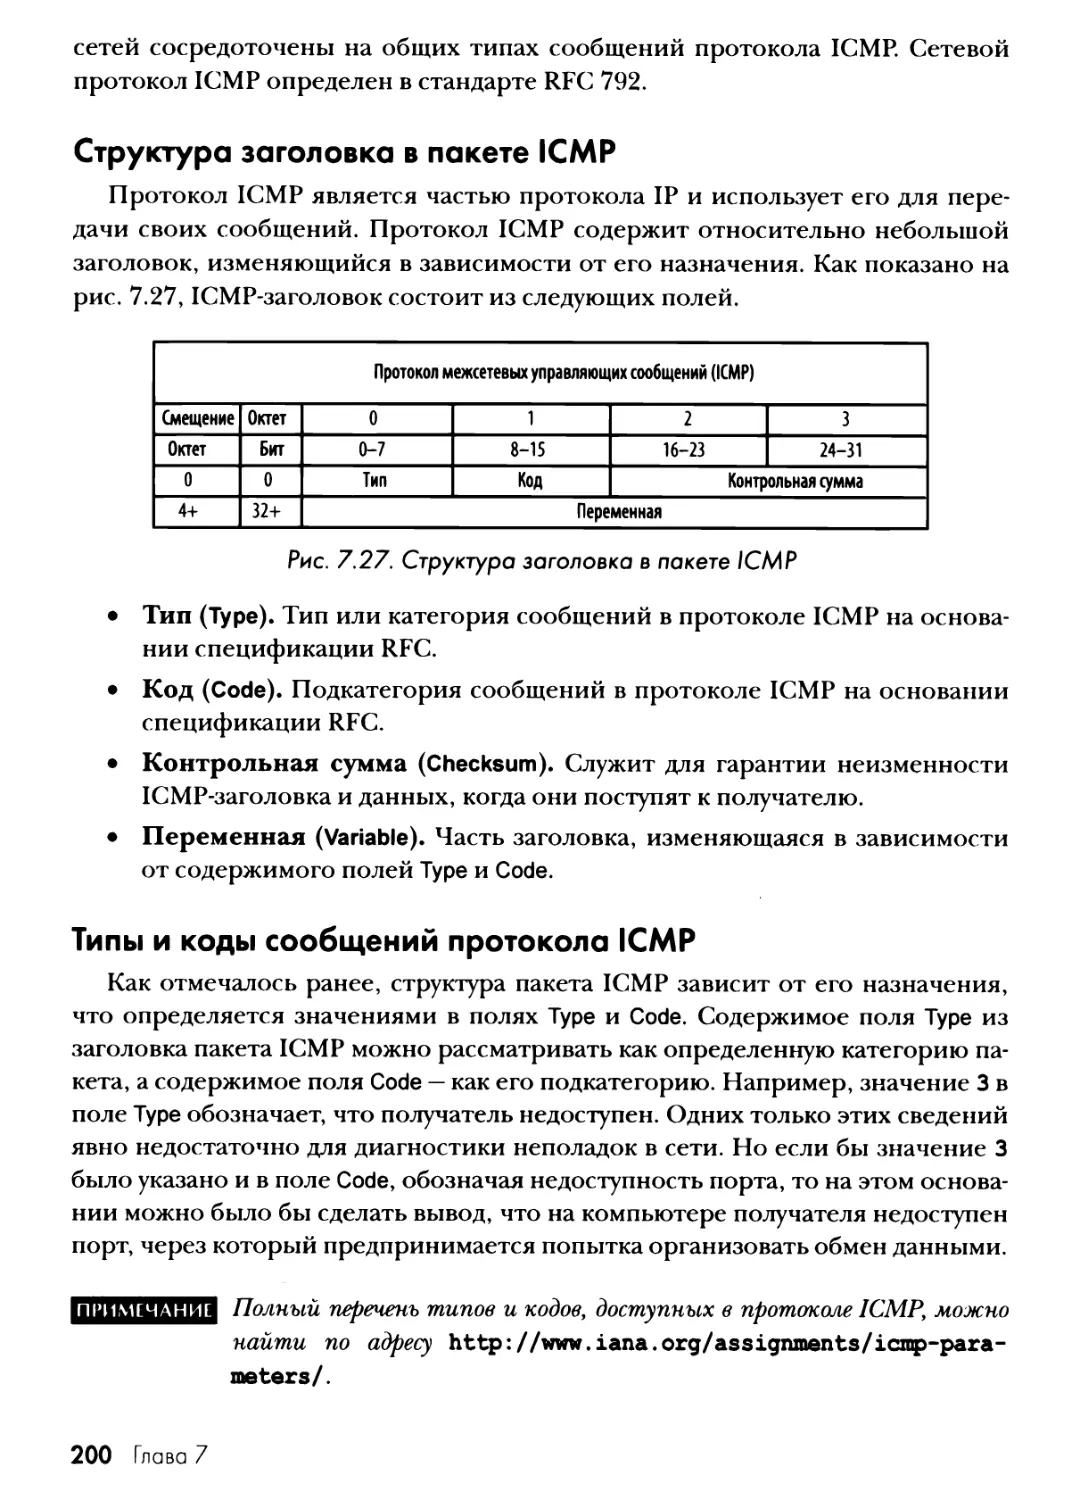 Структура заголовка в пакете ICMP
Типы и коды сообщений протокола ICMP